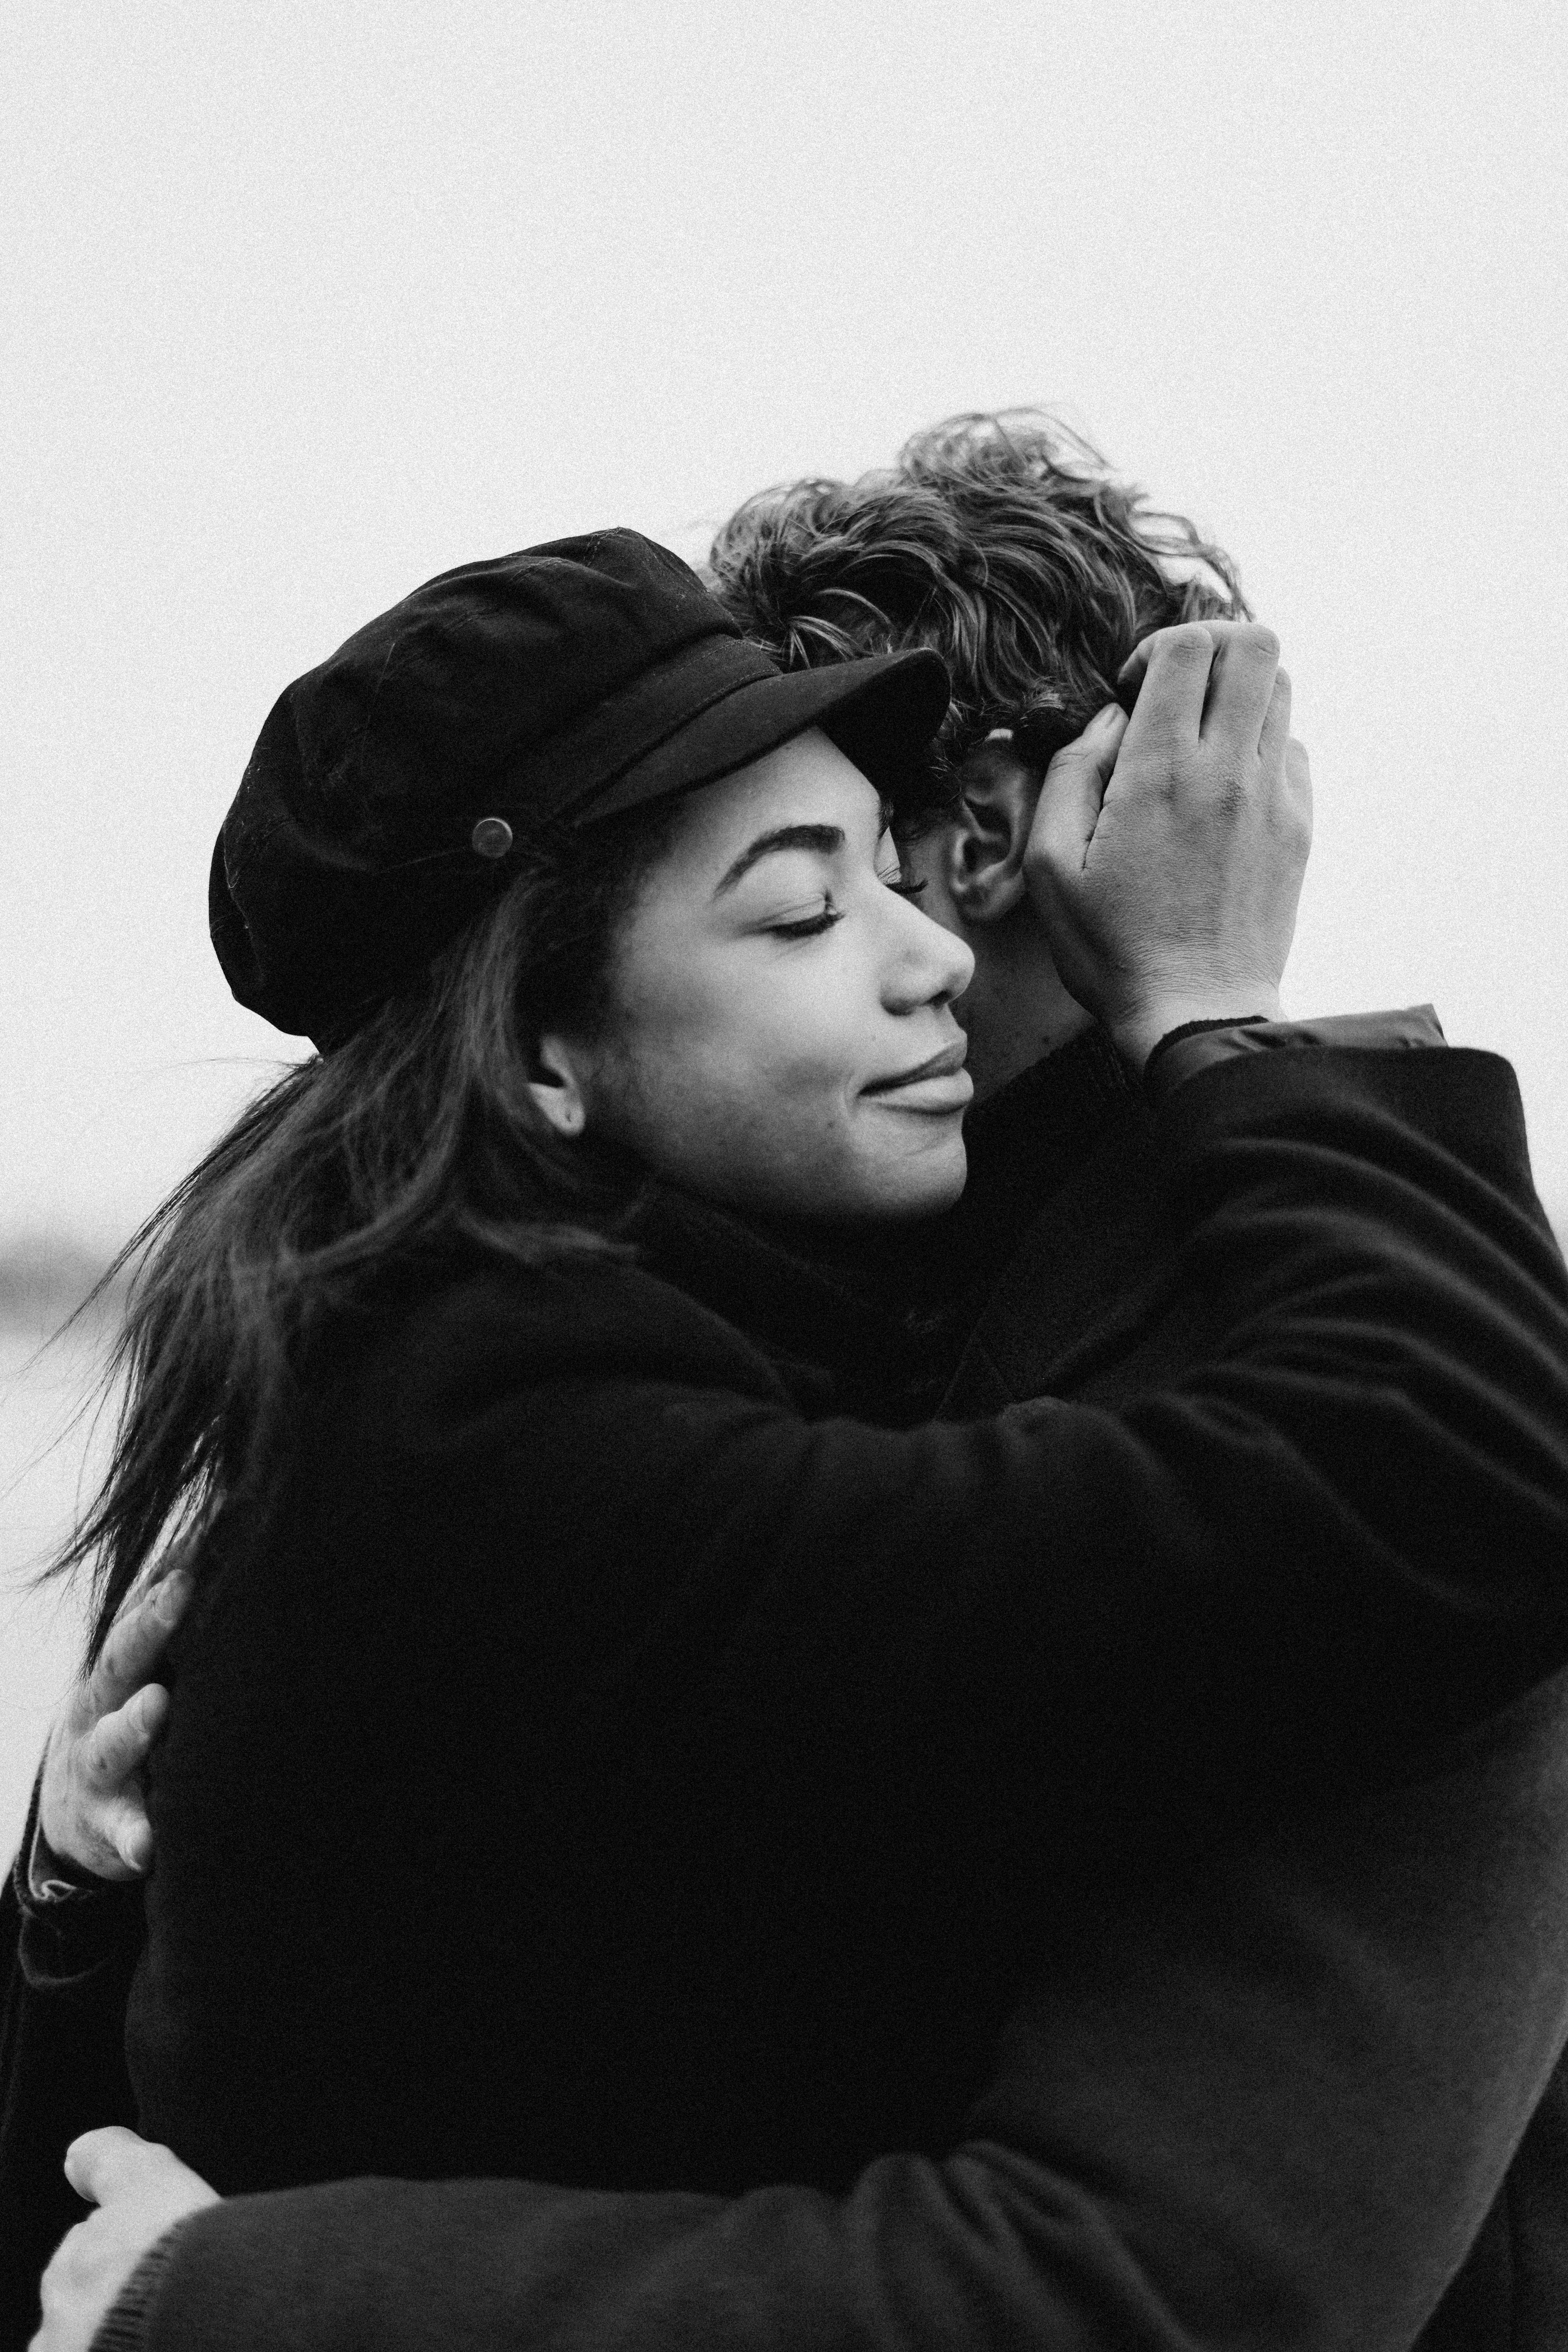 Un couple qui se prend dans les bras | Source : Pexels